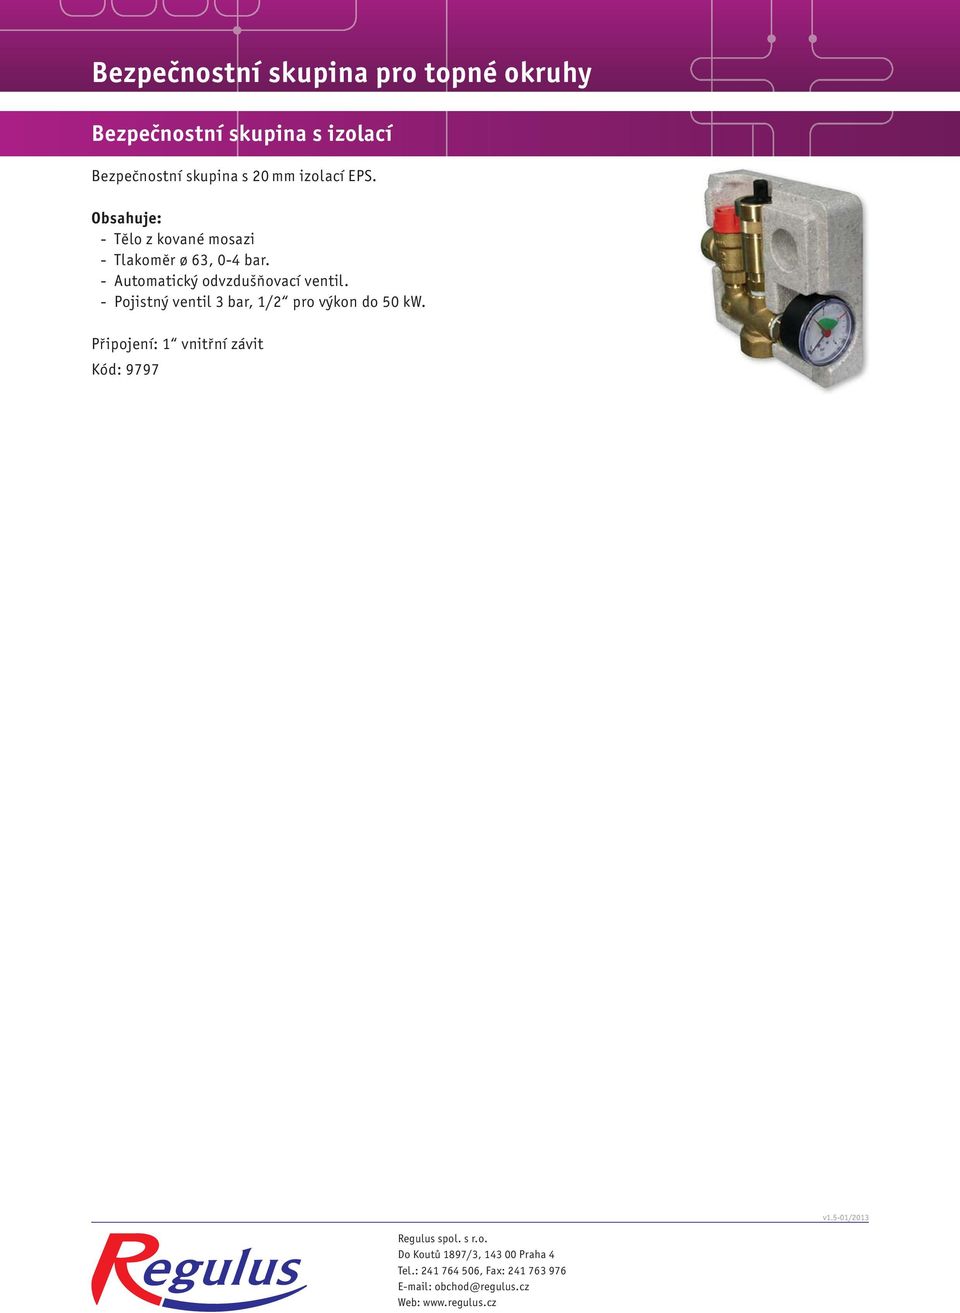 - Pojistný ventil 3 bar, 1/2 pro výkon do 50 kw. Připojení: 1 vnitřní závit Kód: 9797 v1.